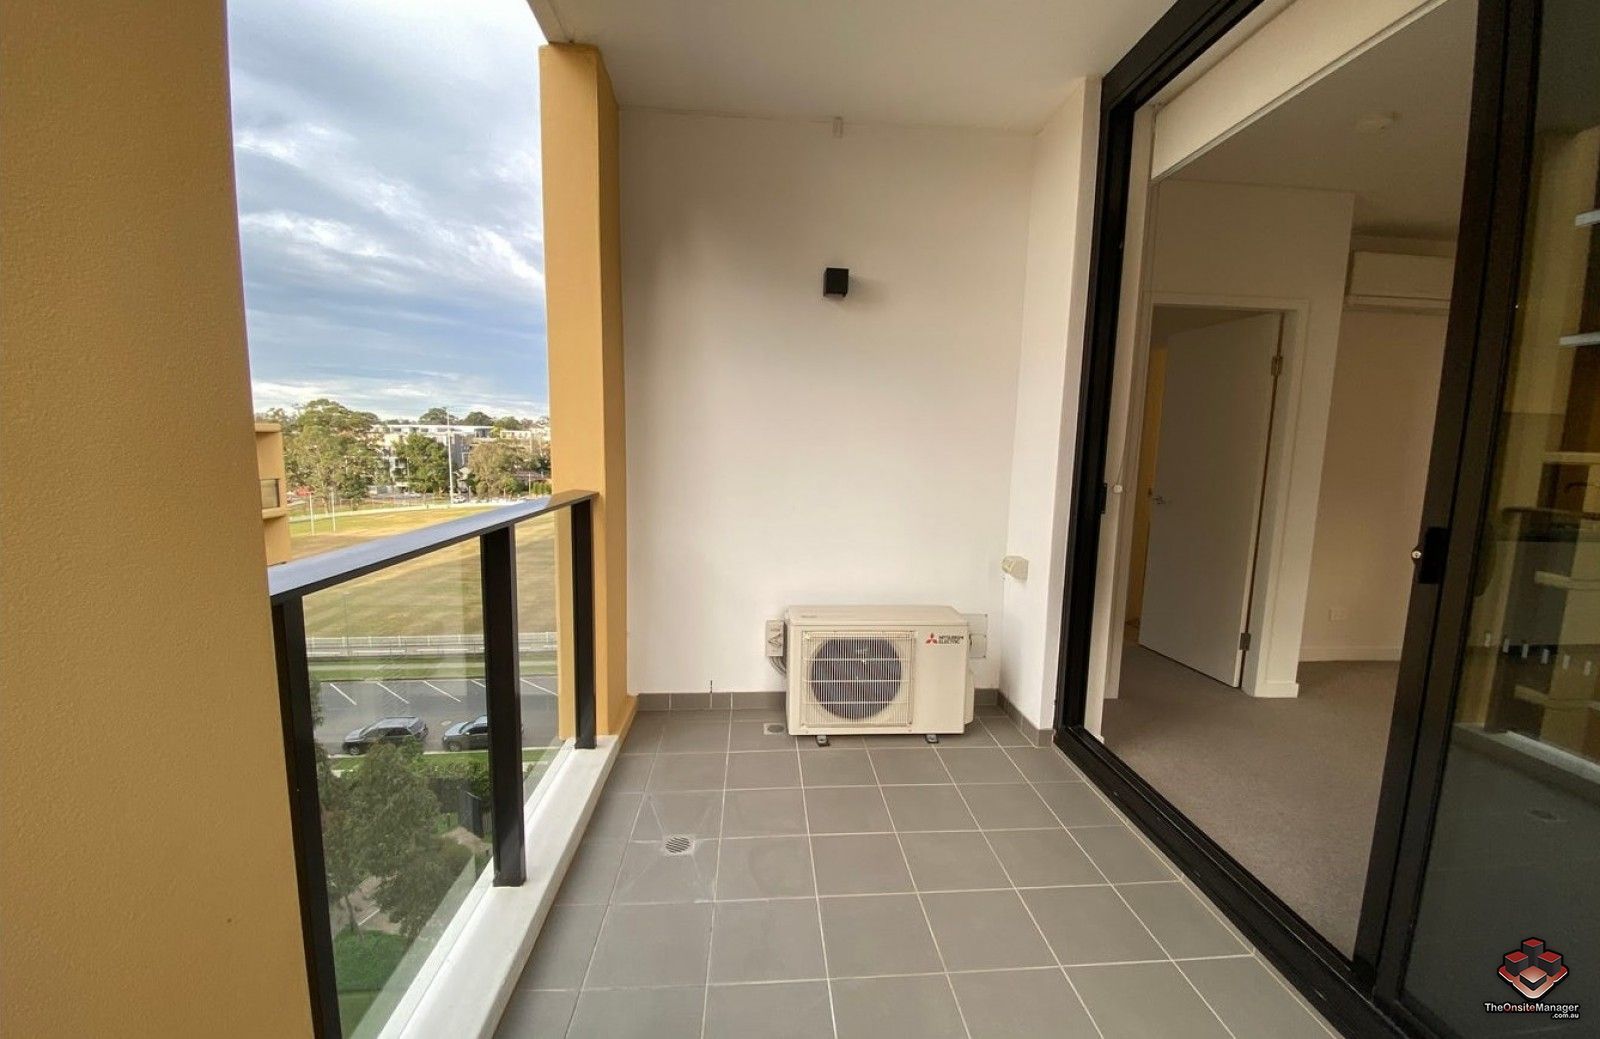 2 bedrooms Apartment / Unit / Flat in 506/21-37 Waitara Avenue WAITARA NSW, 2077